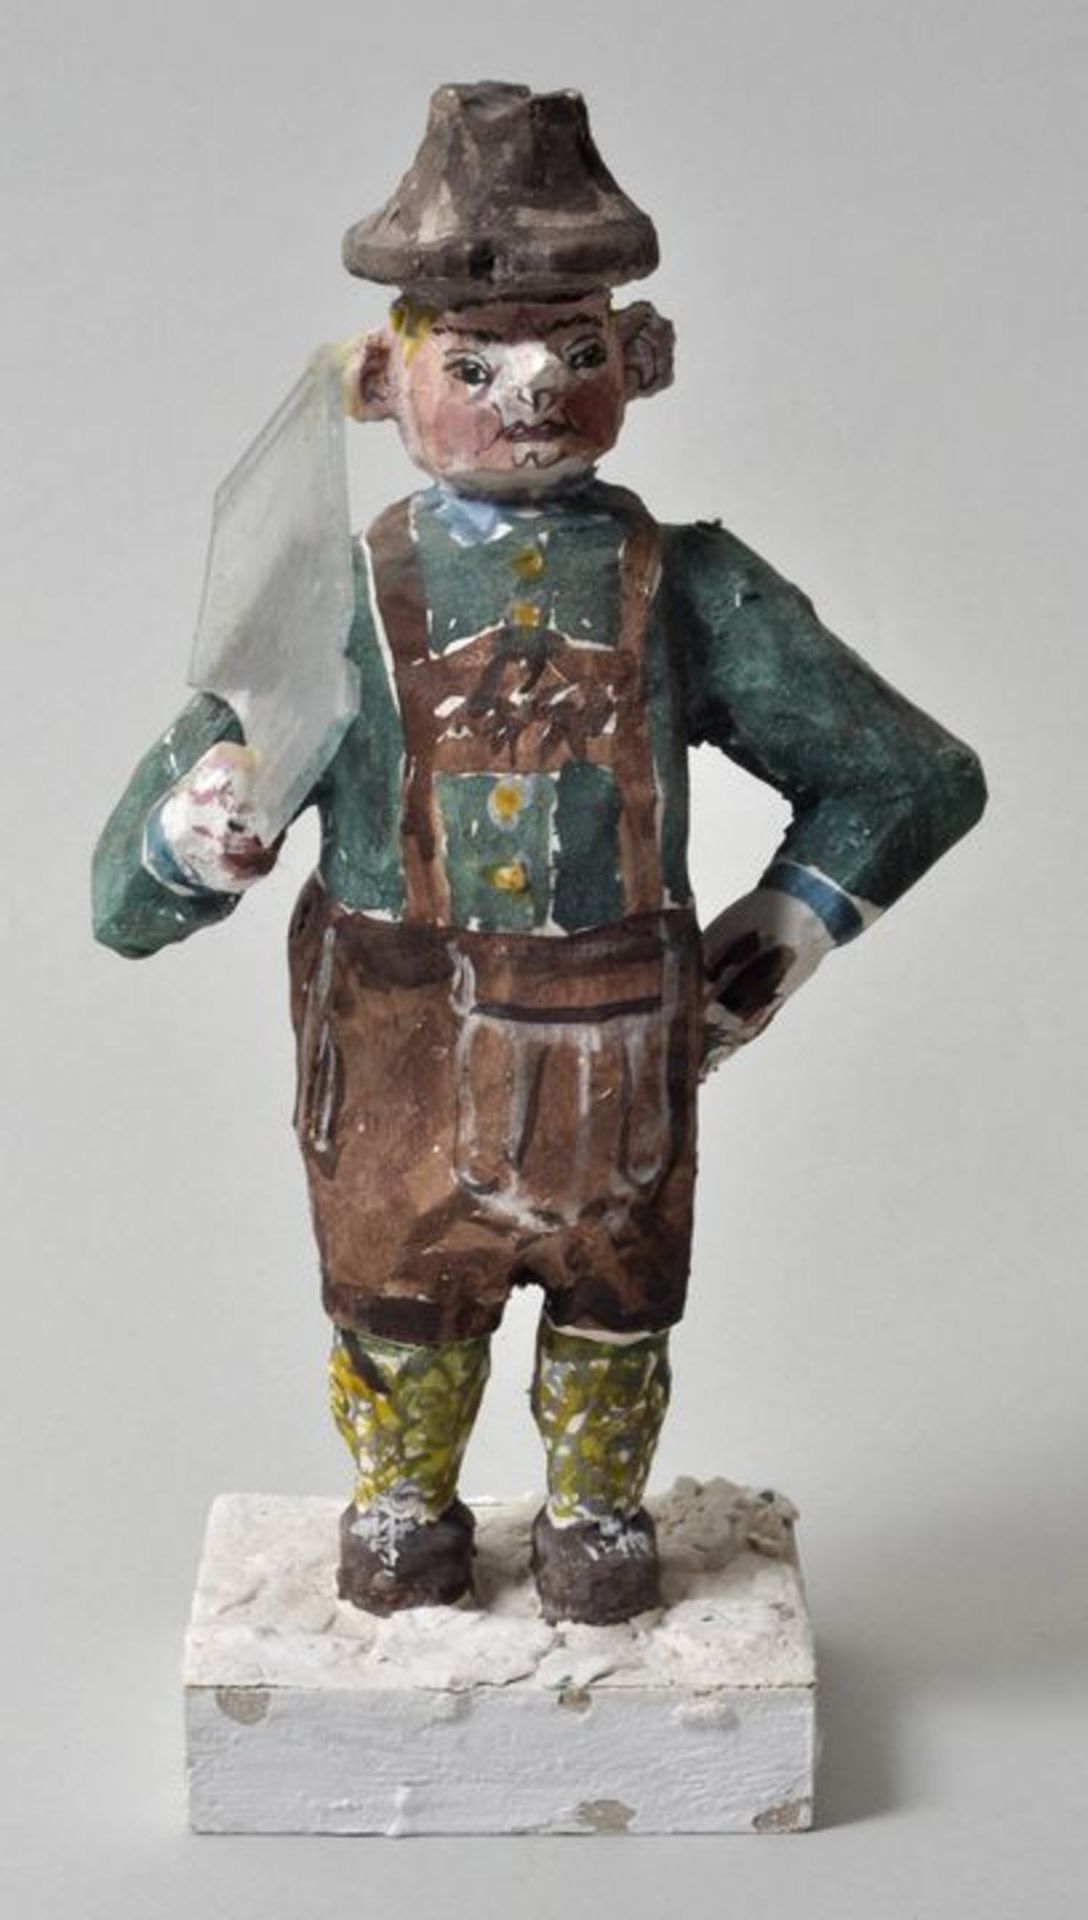 Figur "Der Glaser von Miesbach", Wolfgang Teucher (Höselwang), 2000Holz, geschnitzt, bemalt auf